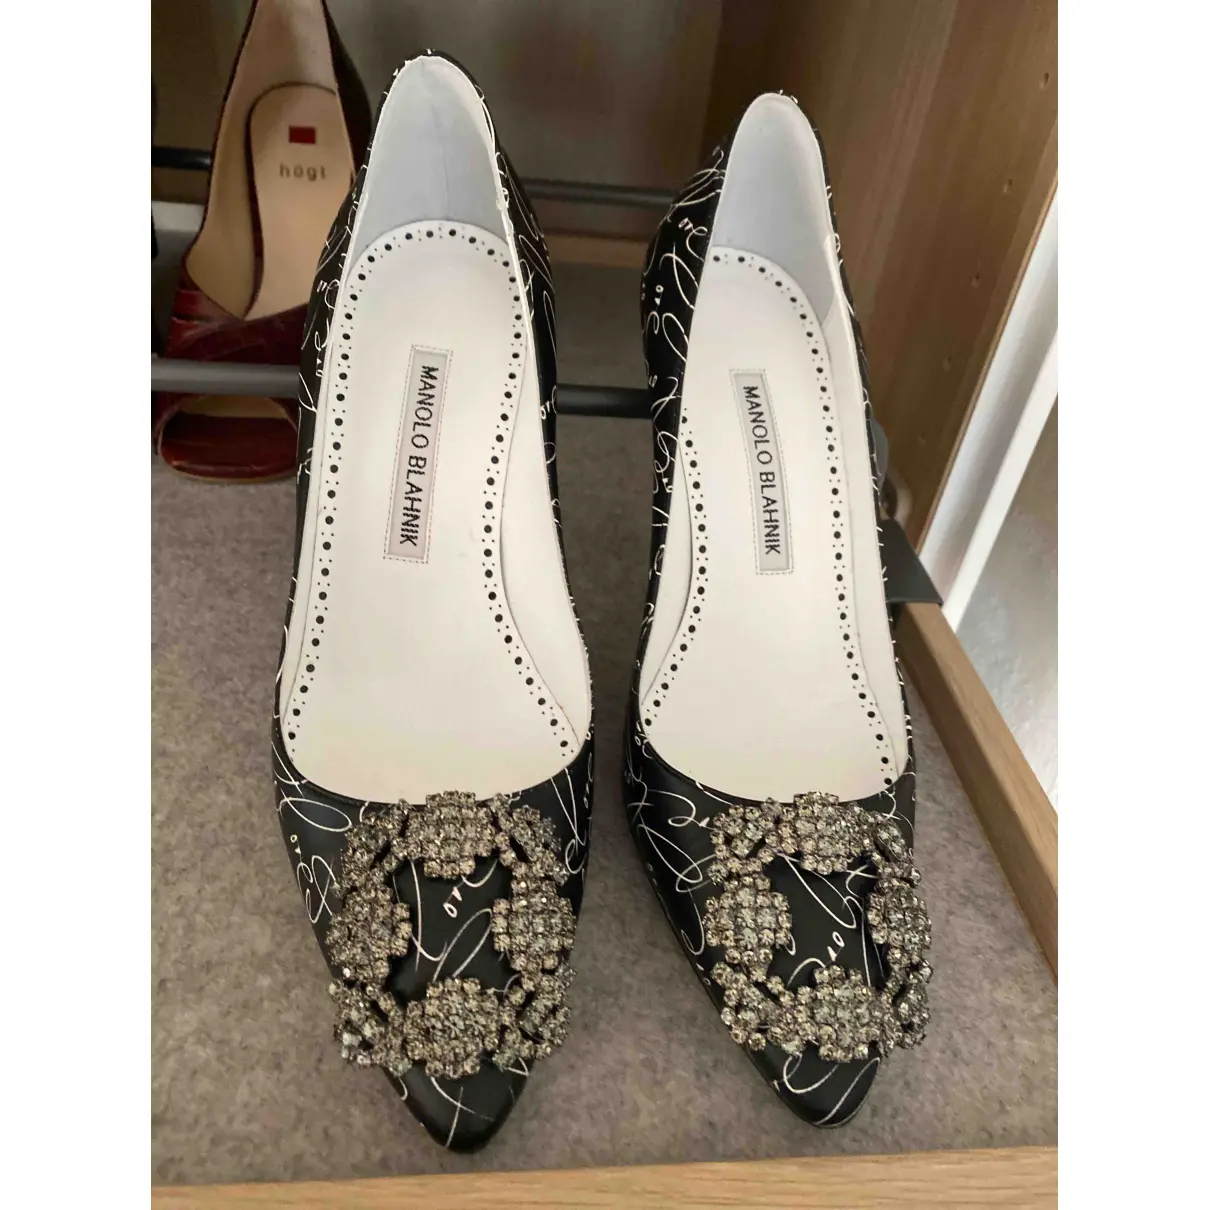 Buy Manolo Blahnik Hangisi leather heels online